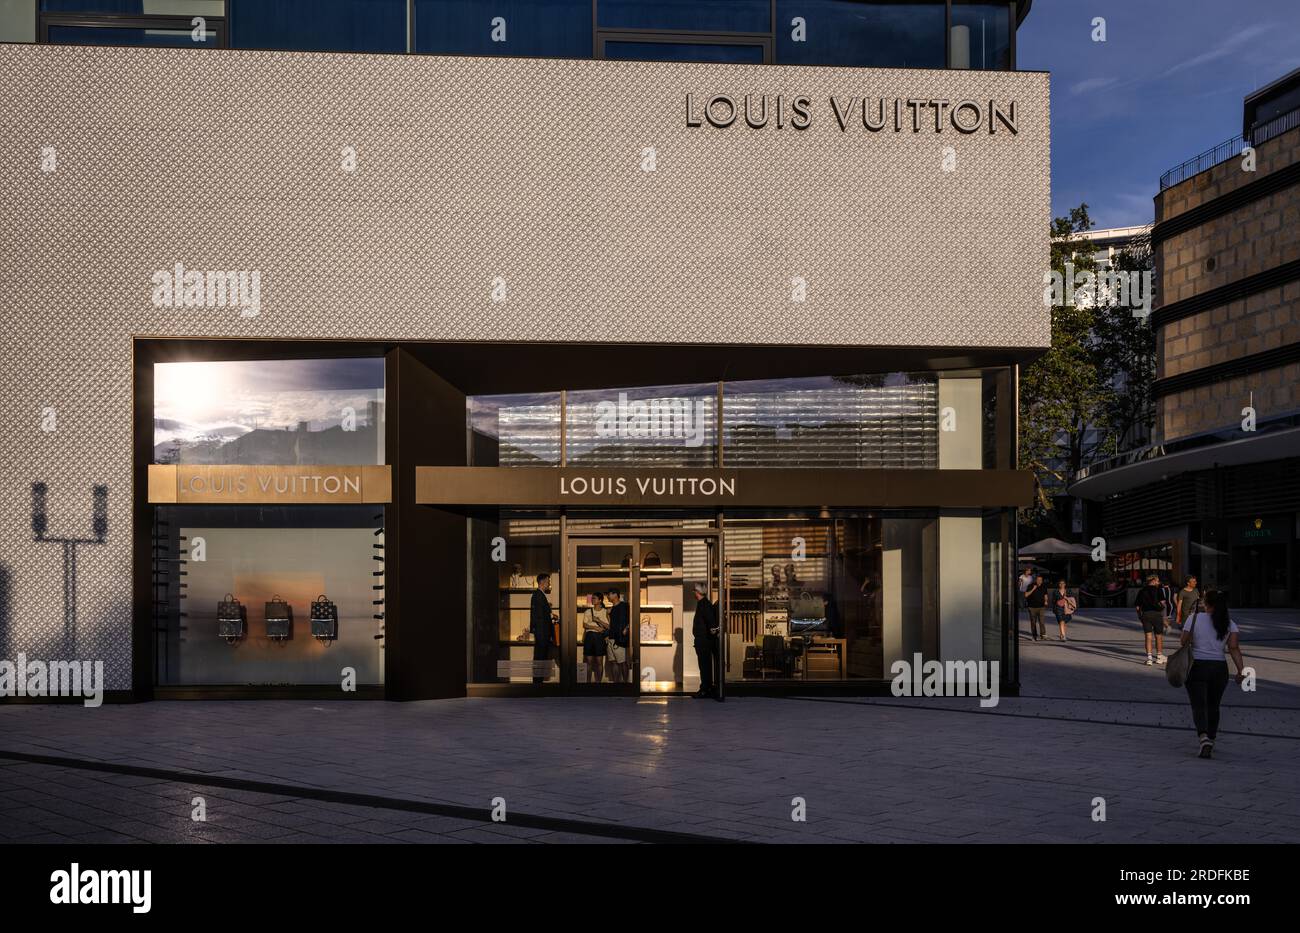 Louis Vuitton Brand Store, Logo, Store, Dorotheen Quartier, DOQU, Shopping  Mall, Stuttgart, Baden-Wuerttemberg Stock Photo - Alamy